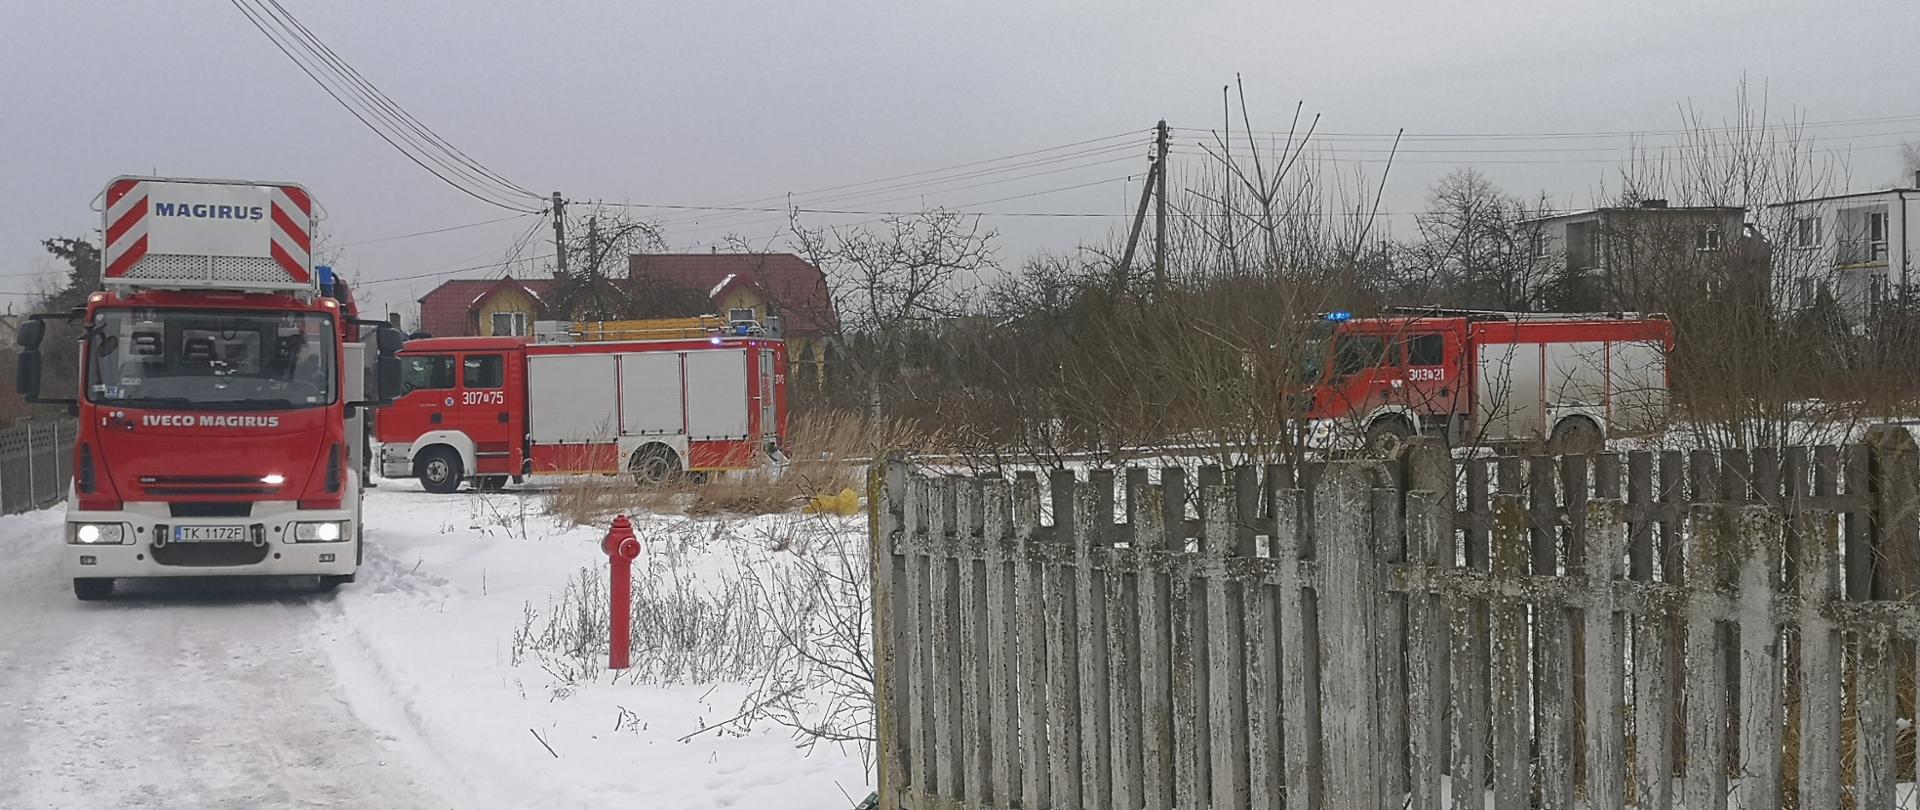 Zdjęcie przedstawia trzy samochody pożarnicze ustawione przed posesją, na której doszło do pożaru. Po prawej stronie widać betonowy płot oraz hydrant. Droga dojazdowa jak również cała okolica pokryta jest śniegiem.